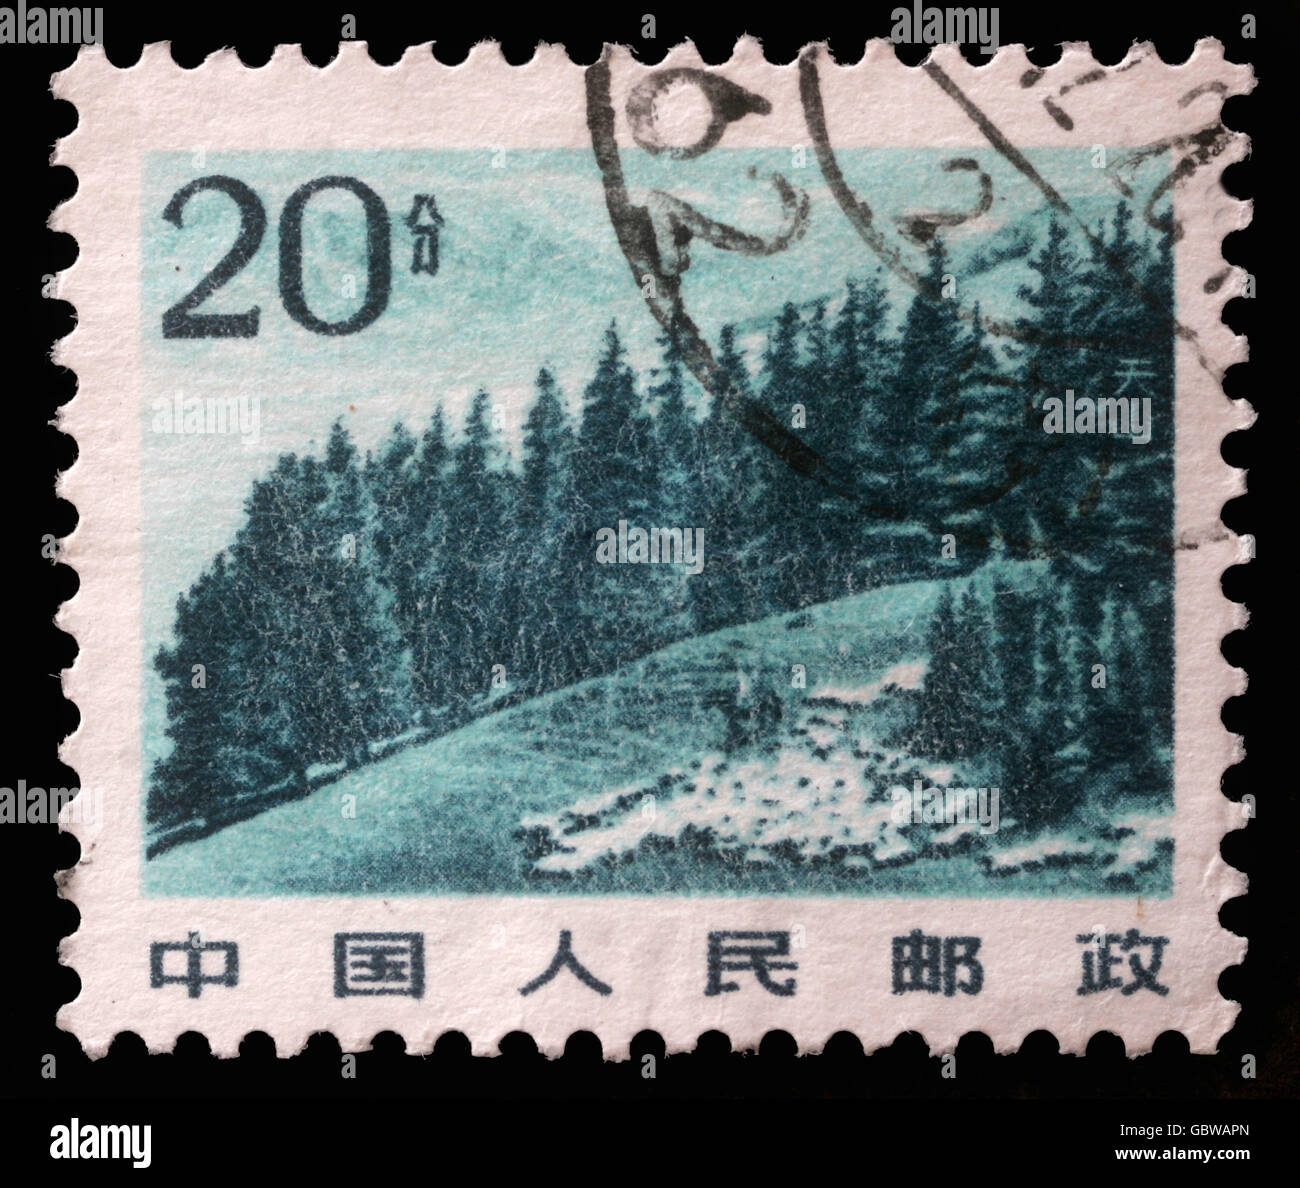 Timbro Stampato in Cina mostra immagine di highland cinese con alberi di pino di montagna Tianshan, circa 1983 Foto Stock